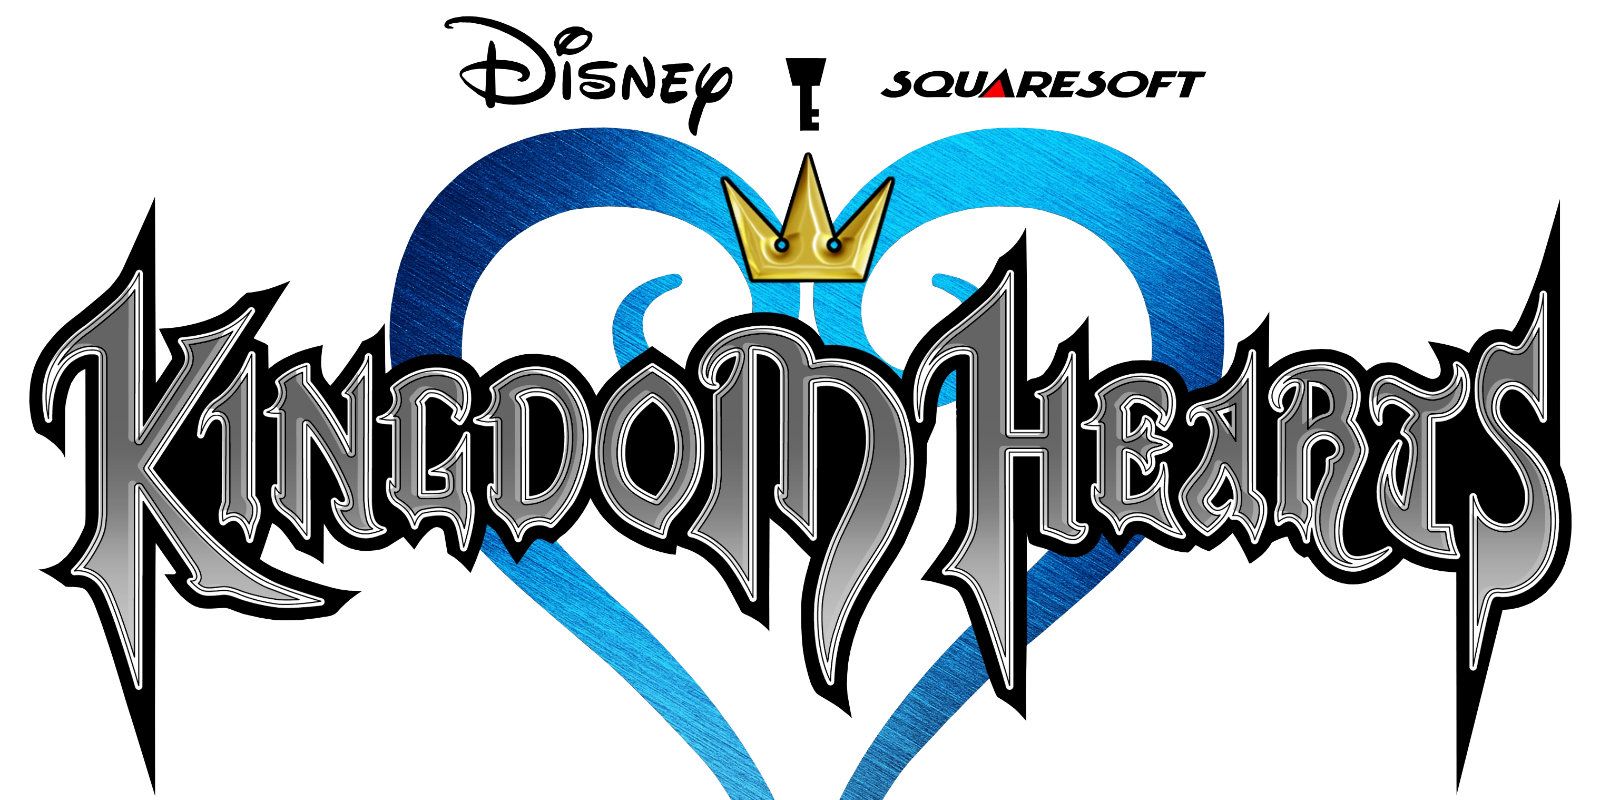 Kingdom Hearts 3 Still Has ‘Some Way to Go’